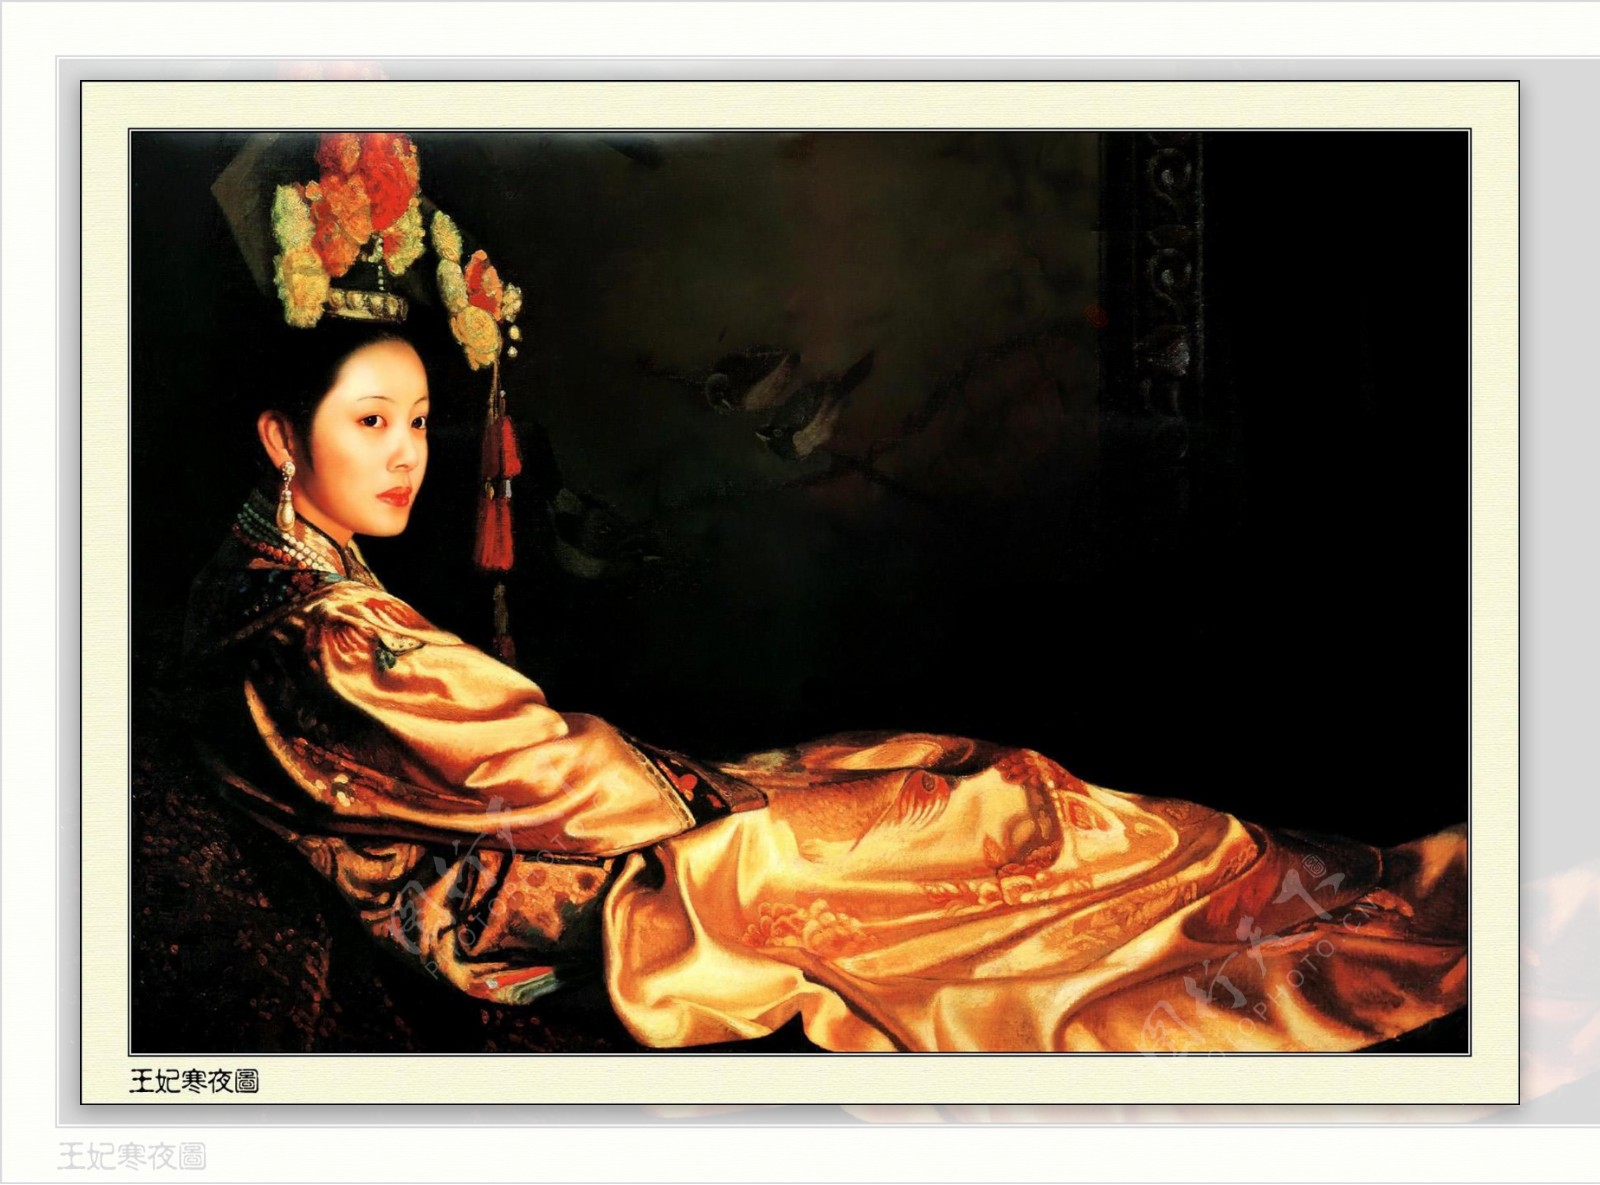 姜国芳的清宫油画王妃寒夜图图片